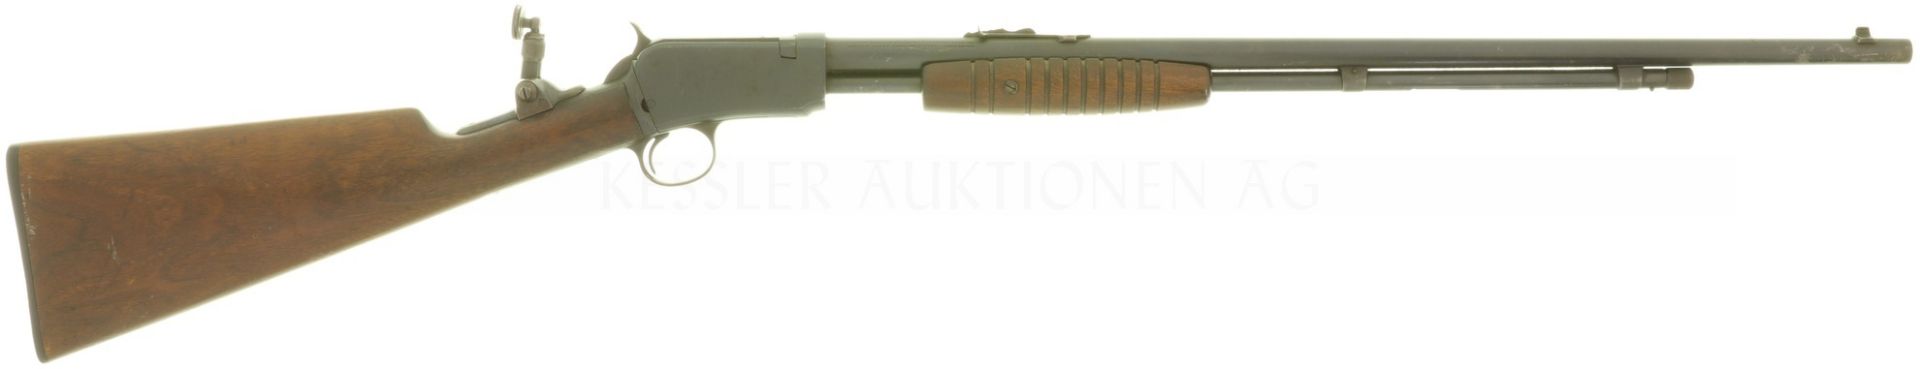 Vorderschaftrepetierbüchse, Winchester Mod. 62, Kal. .22LR